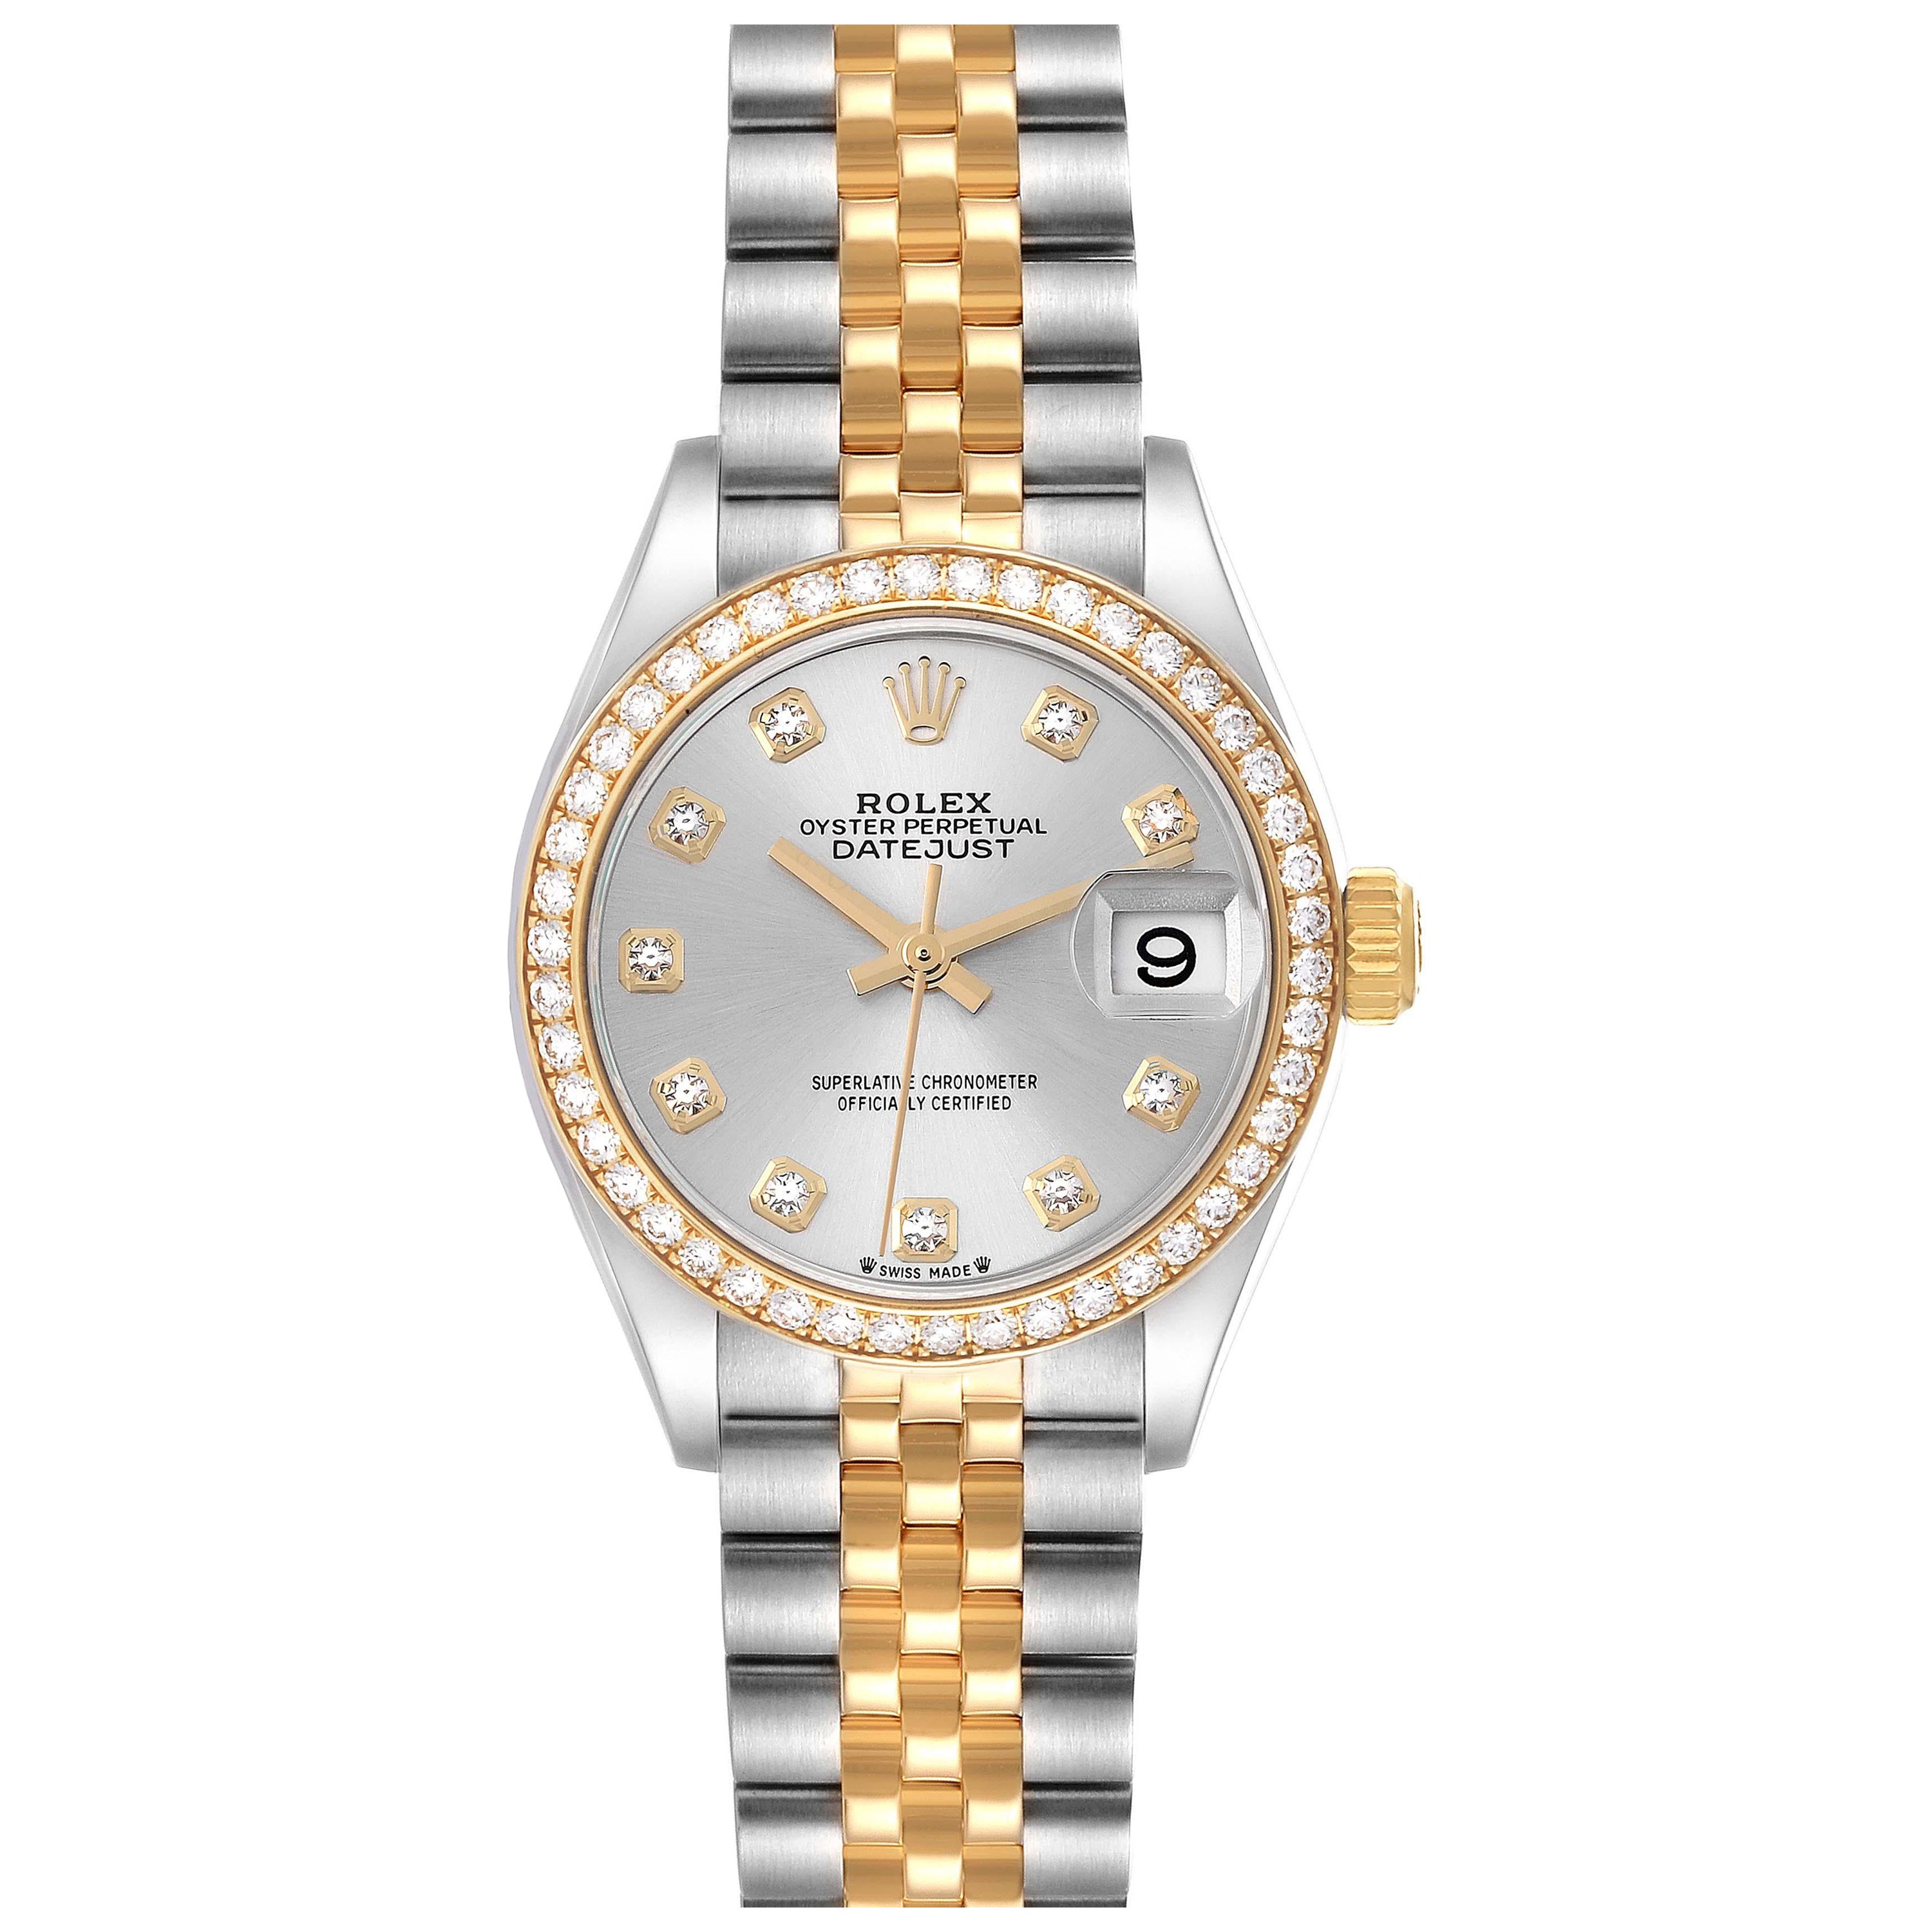 Rolex Datejust Steel Yellow Gold Diamond Ladies Watch 279383 Unworn